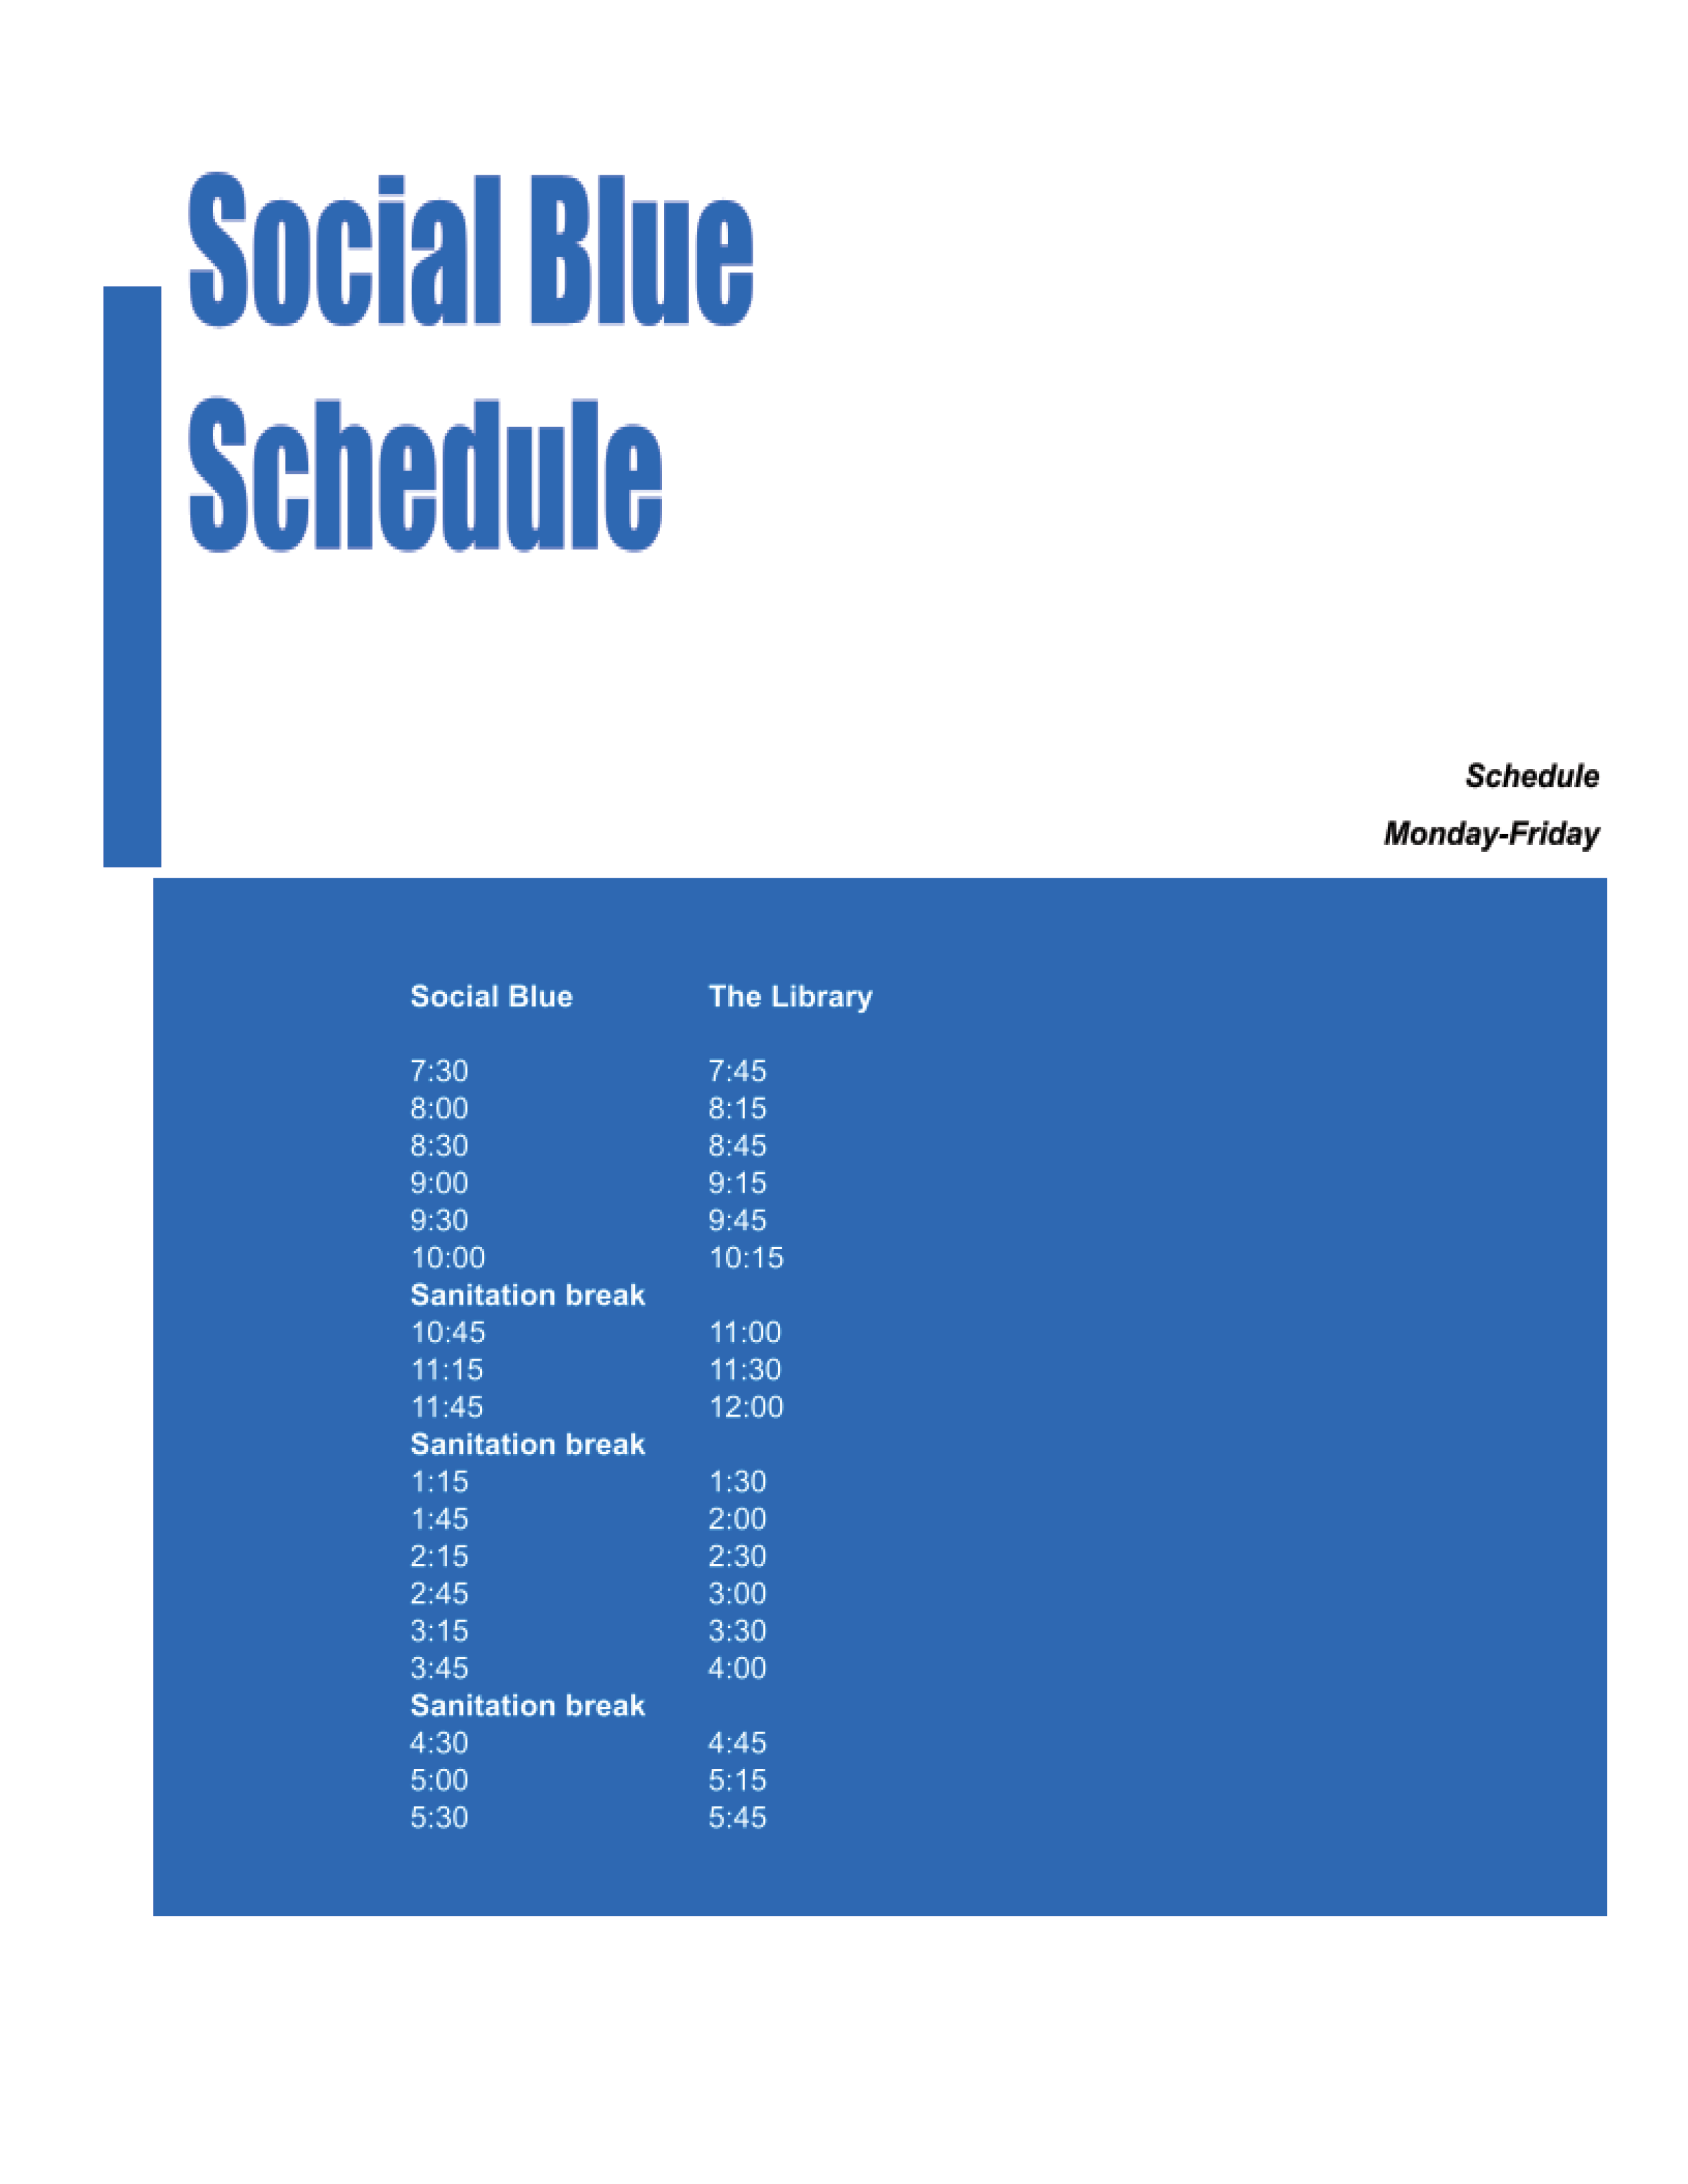 Social Blue Schedule